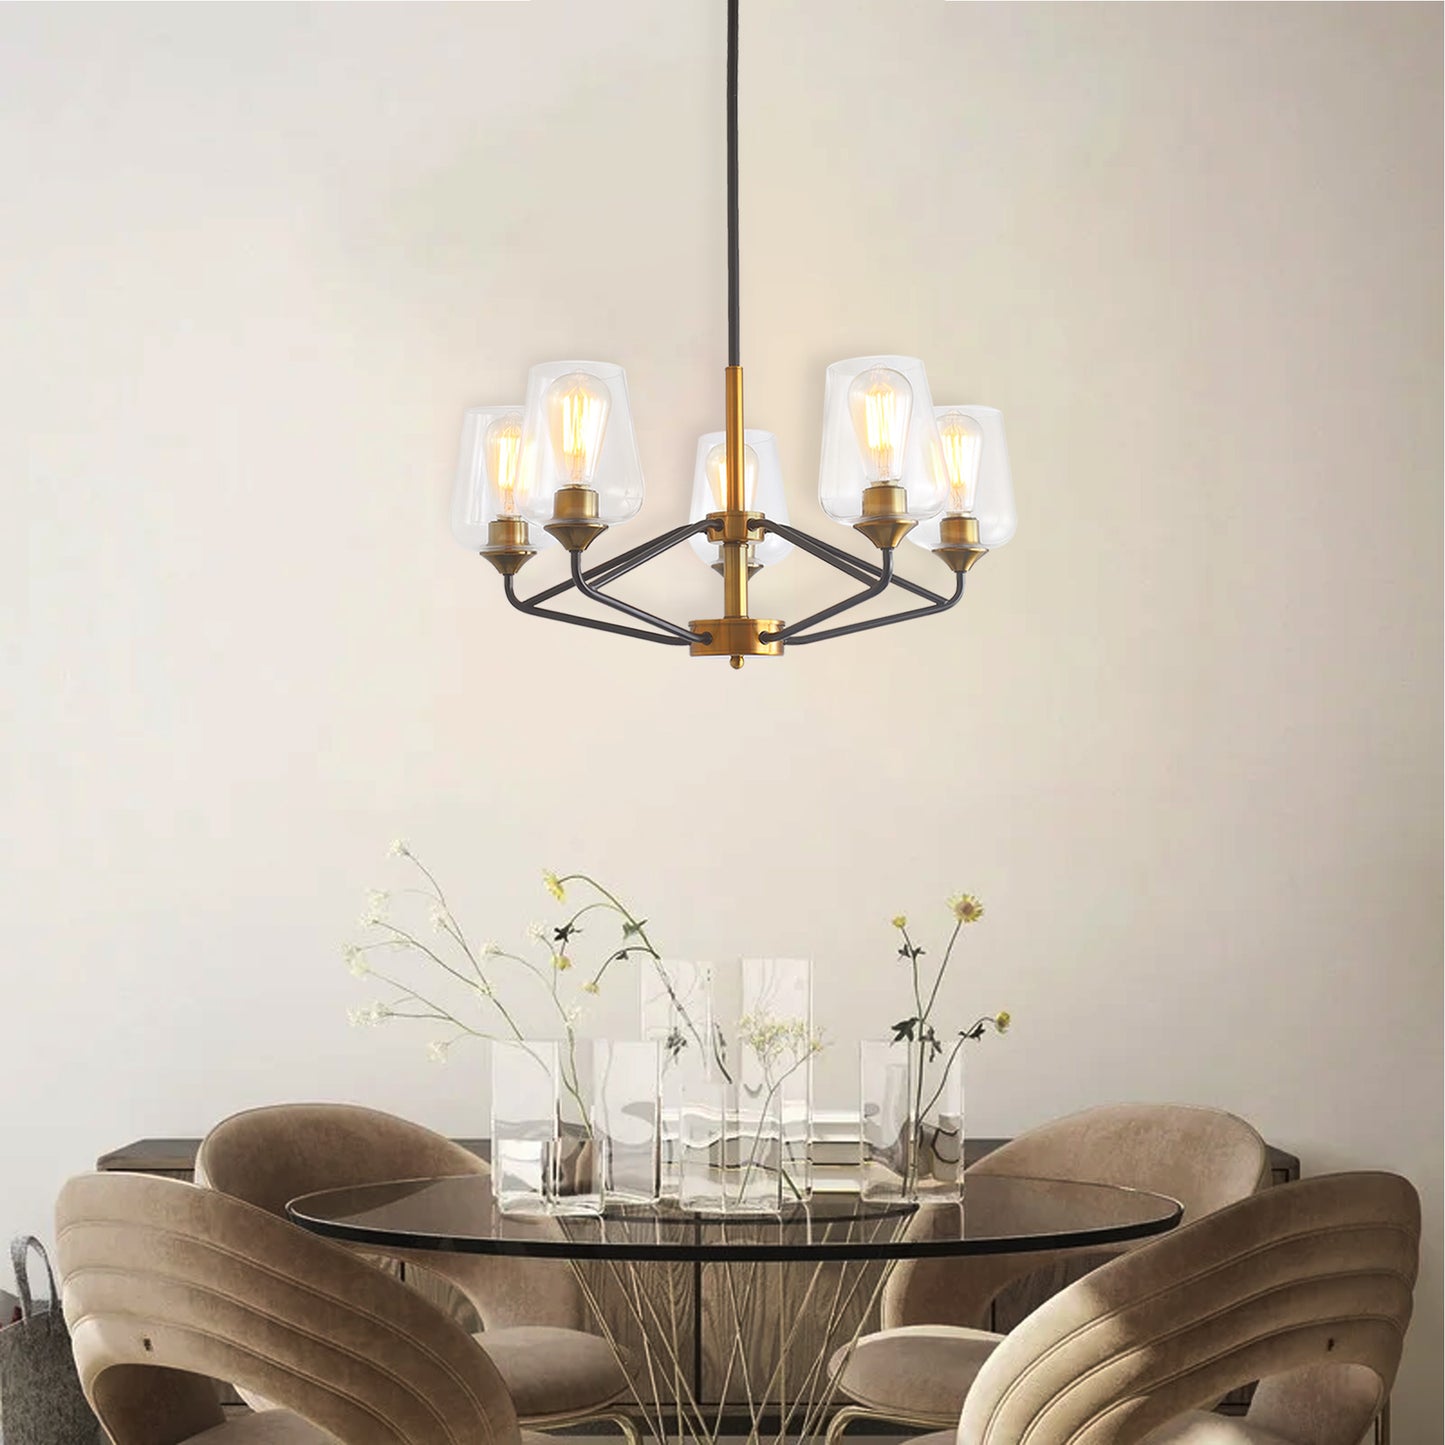 Modern American hanging chandelier -5 bulbs -E26 lamp holder